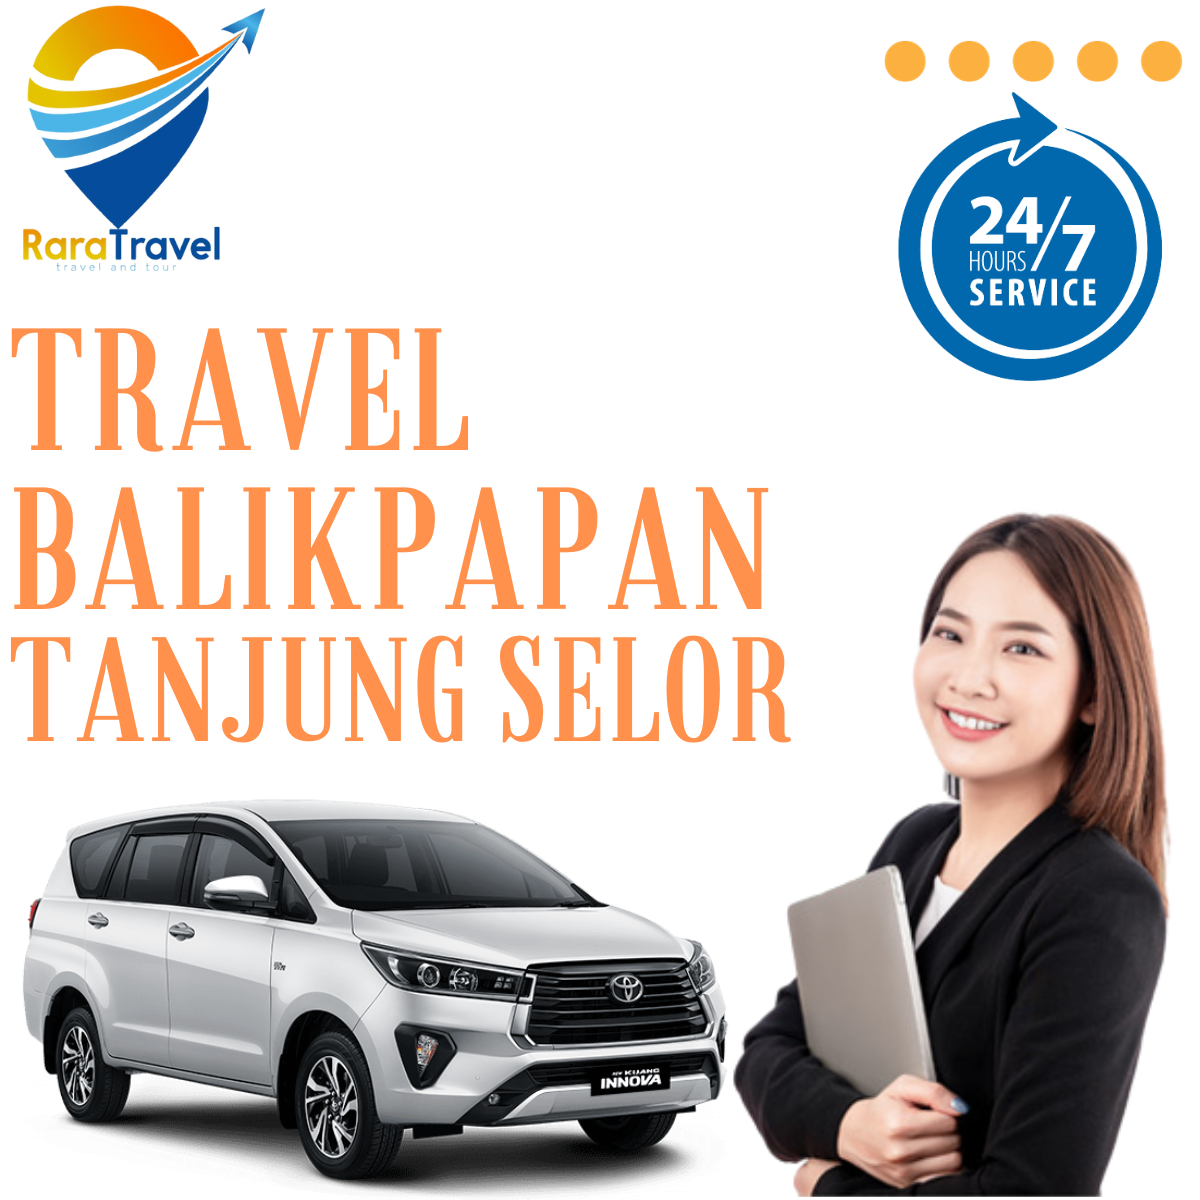 Travel Balikpapan Tanjung Selor Harga Tiket Murah Layanan PP 24 Jam Terbaik